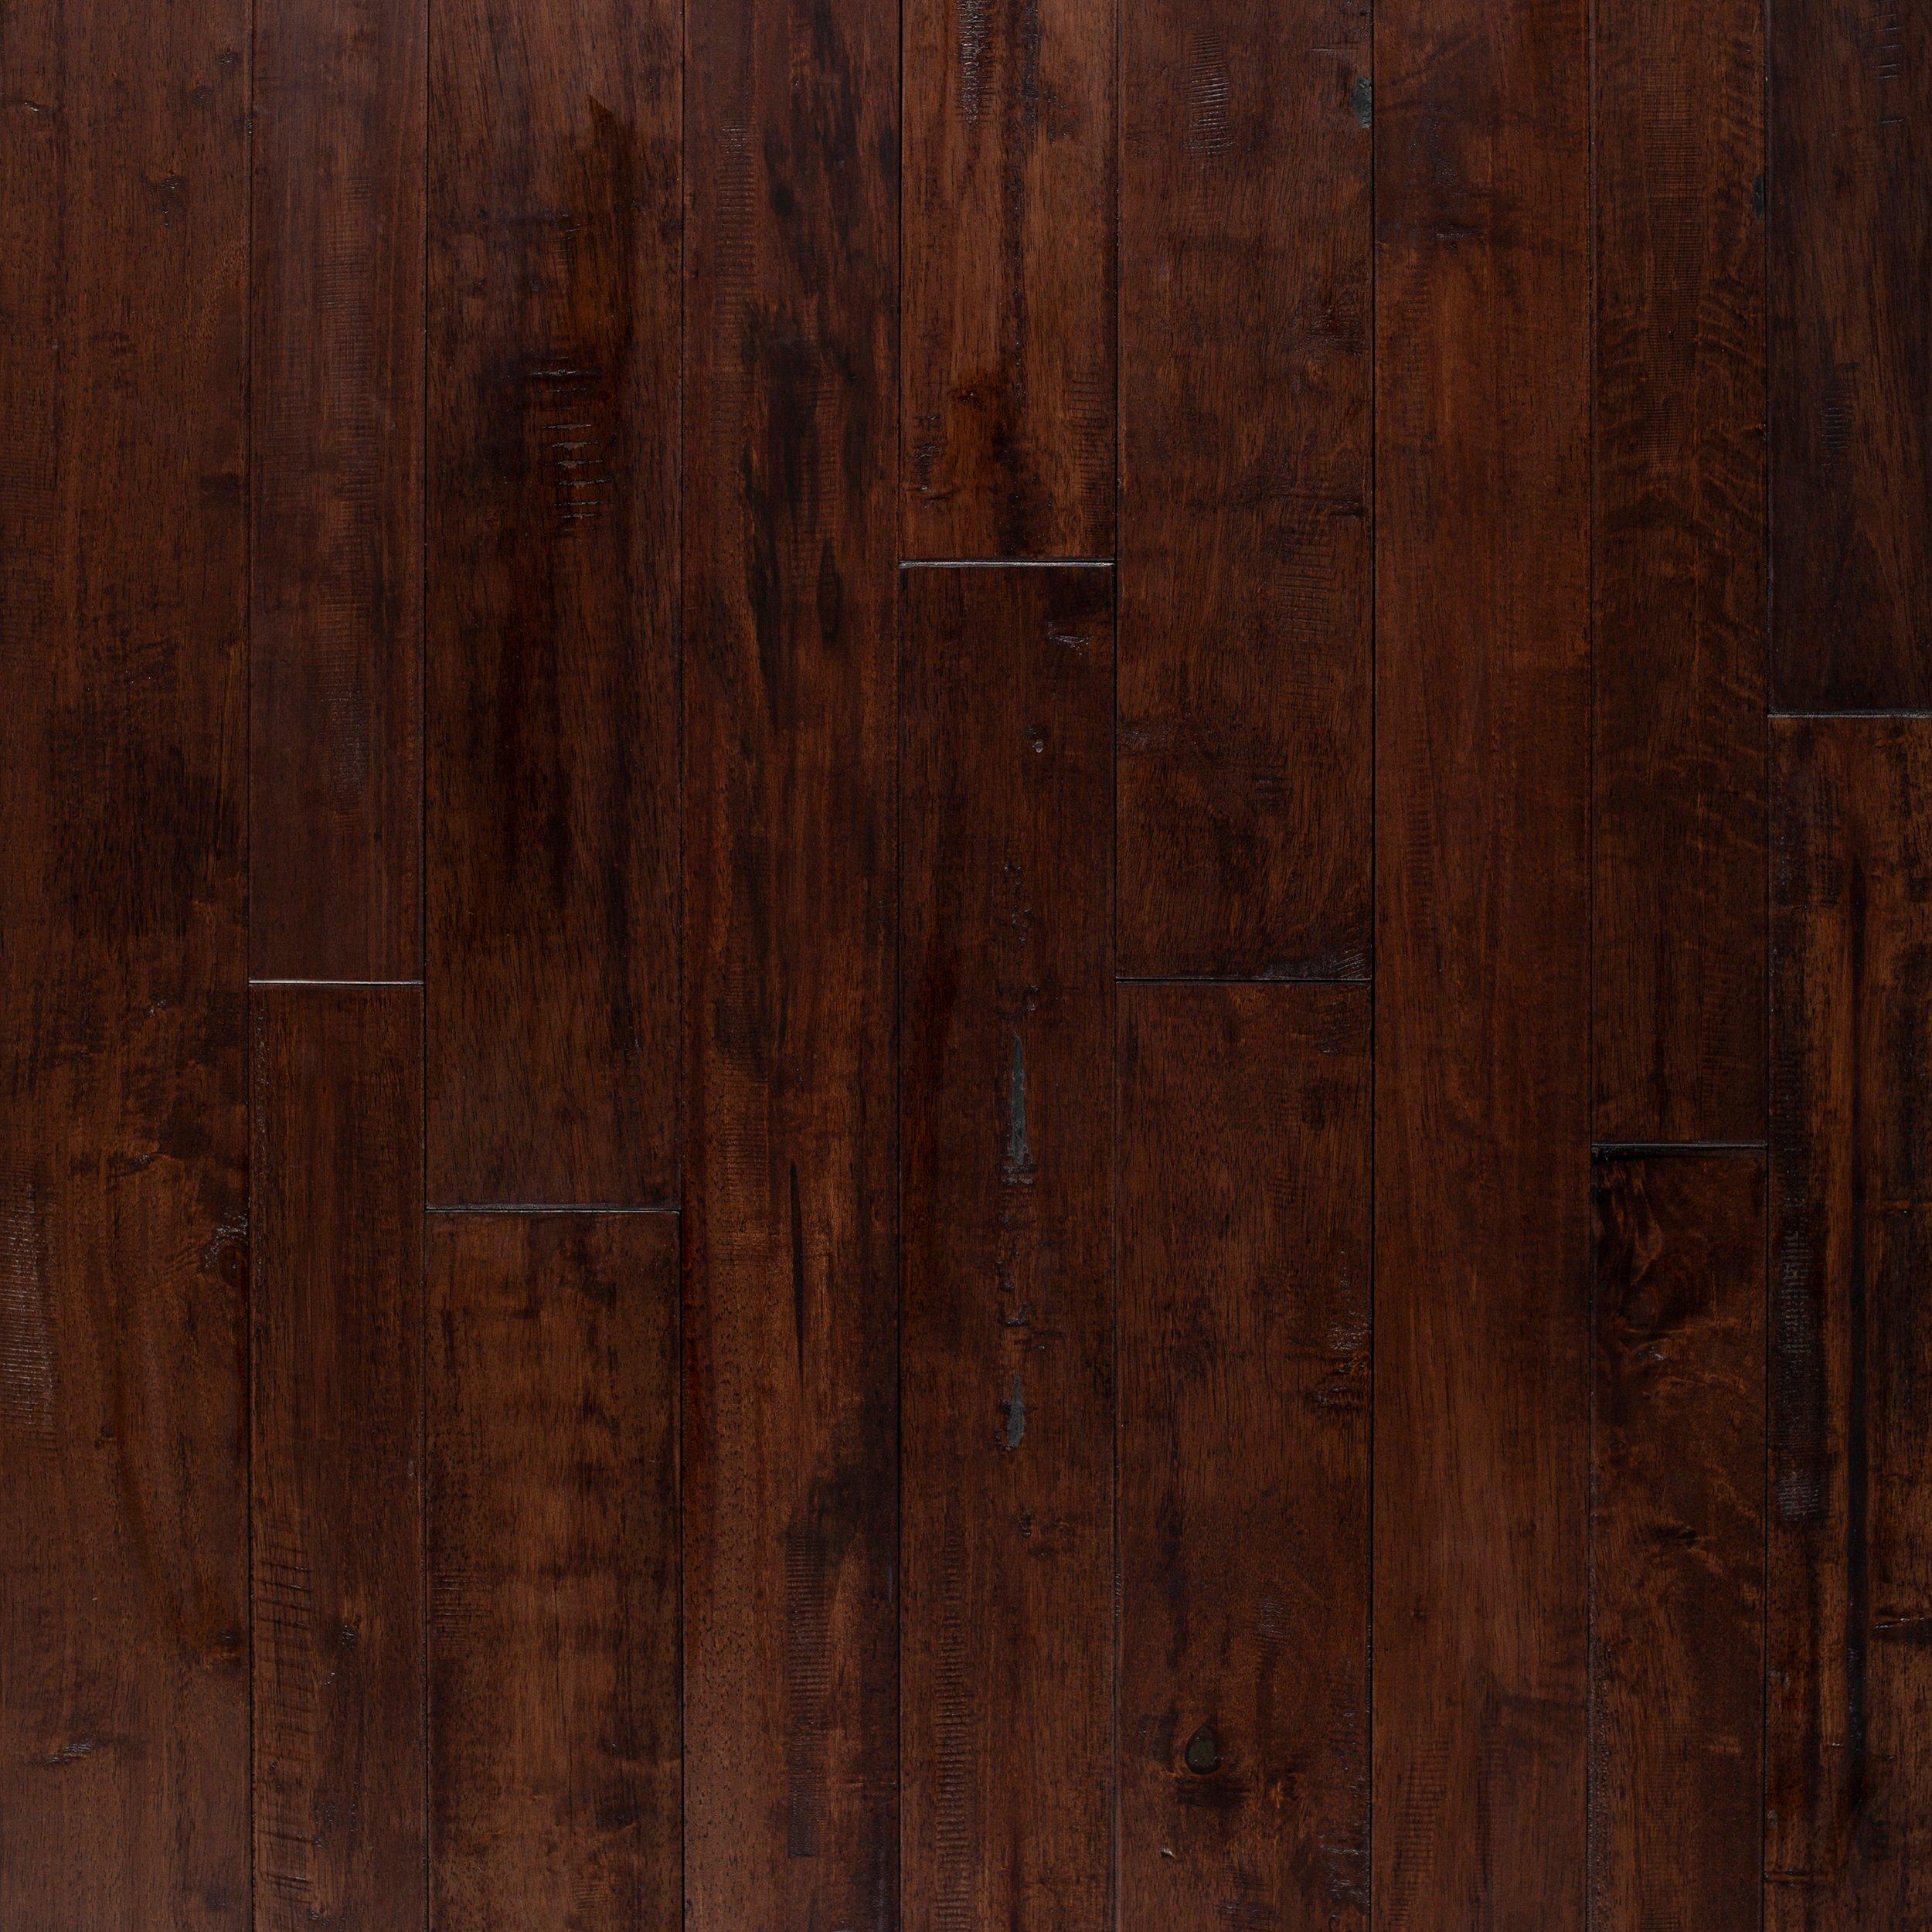 Hevea Jaya Distressed Solid Hardwood, Distressed Solid Hardwood Flooring